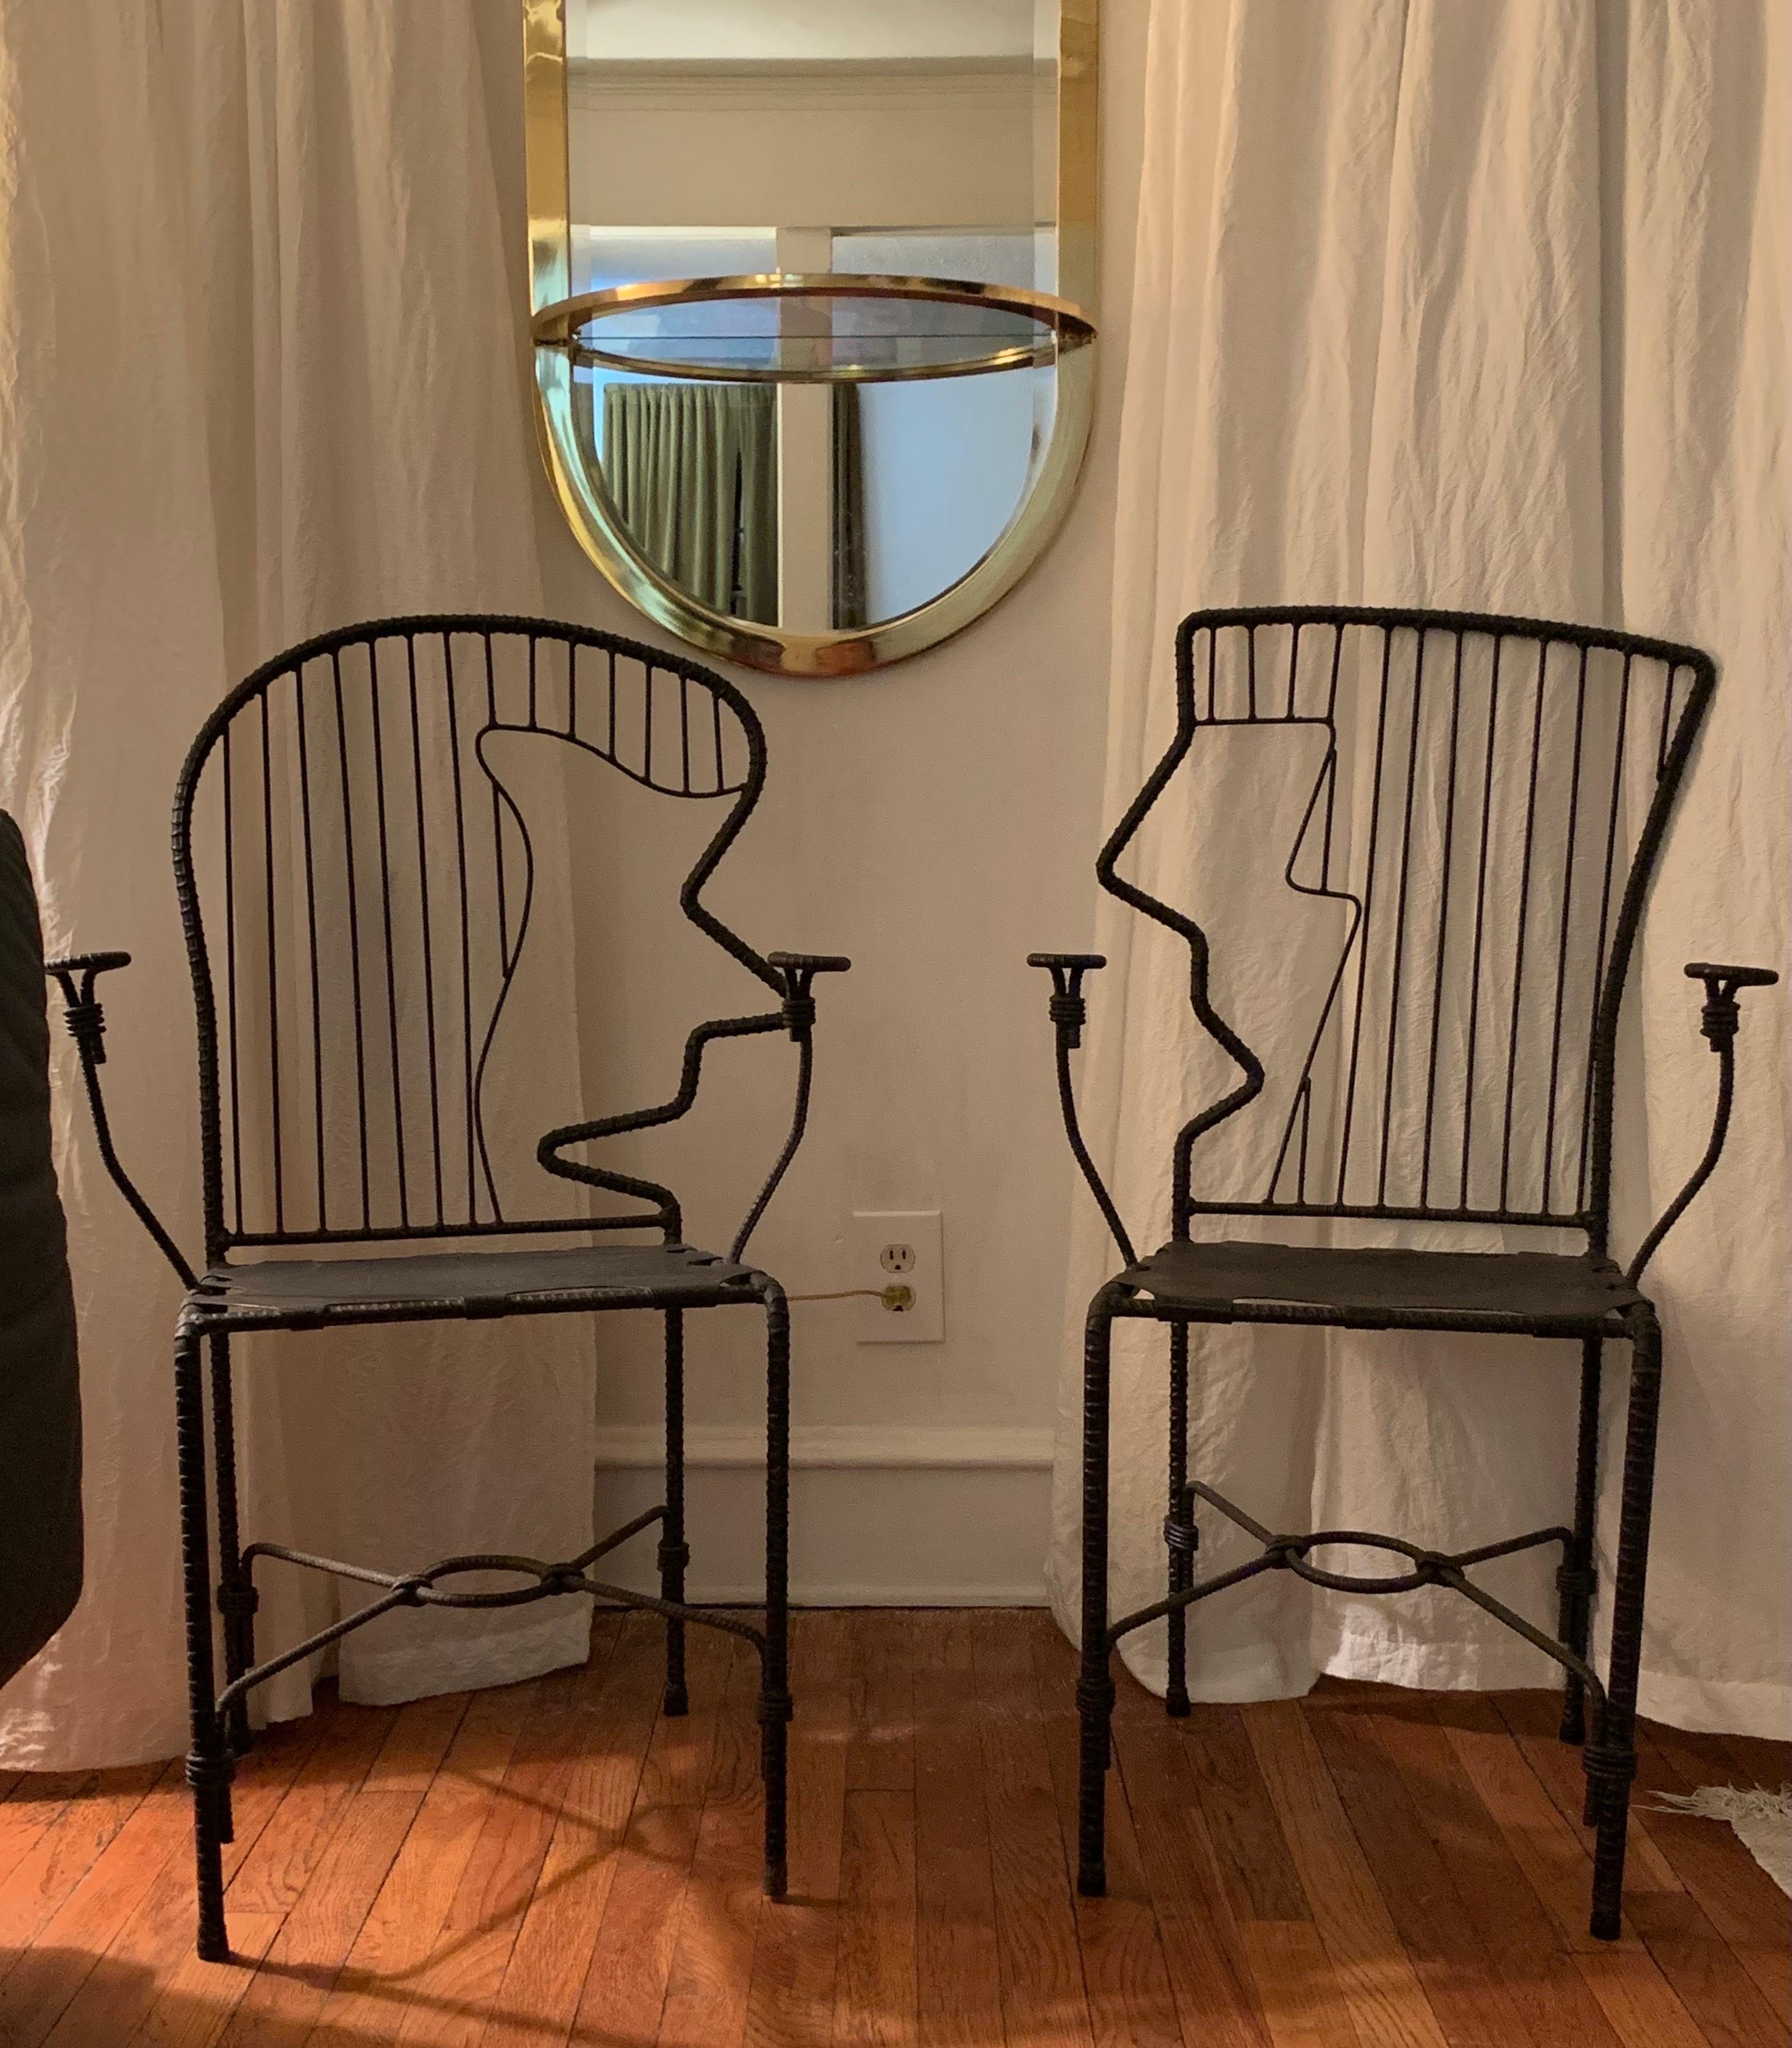 Américain Paire de chaises sculpturales à visage en fer de l'artiste industriel Ries Niemi, 1990-